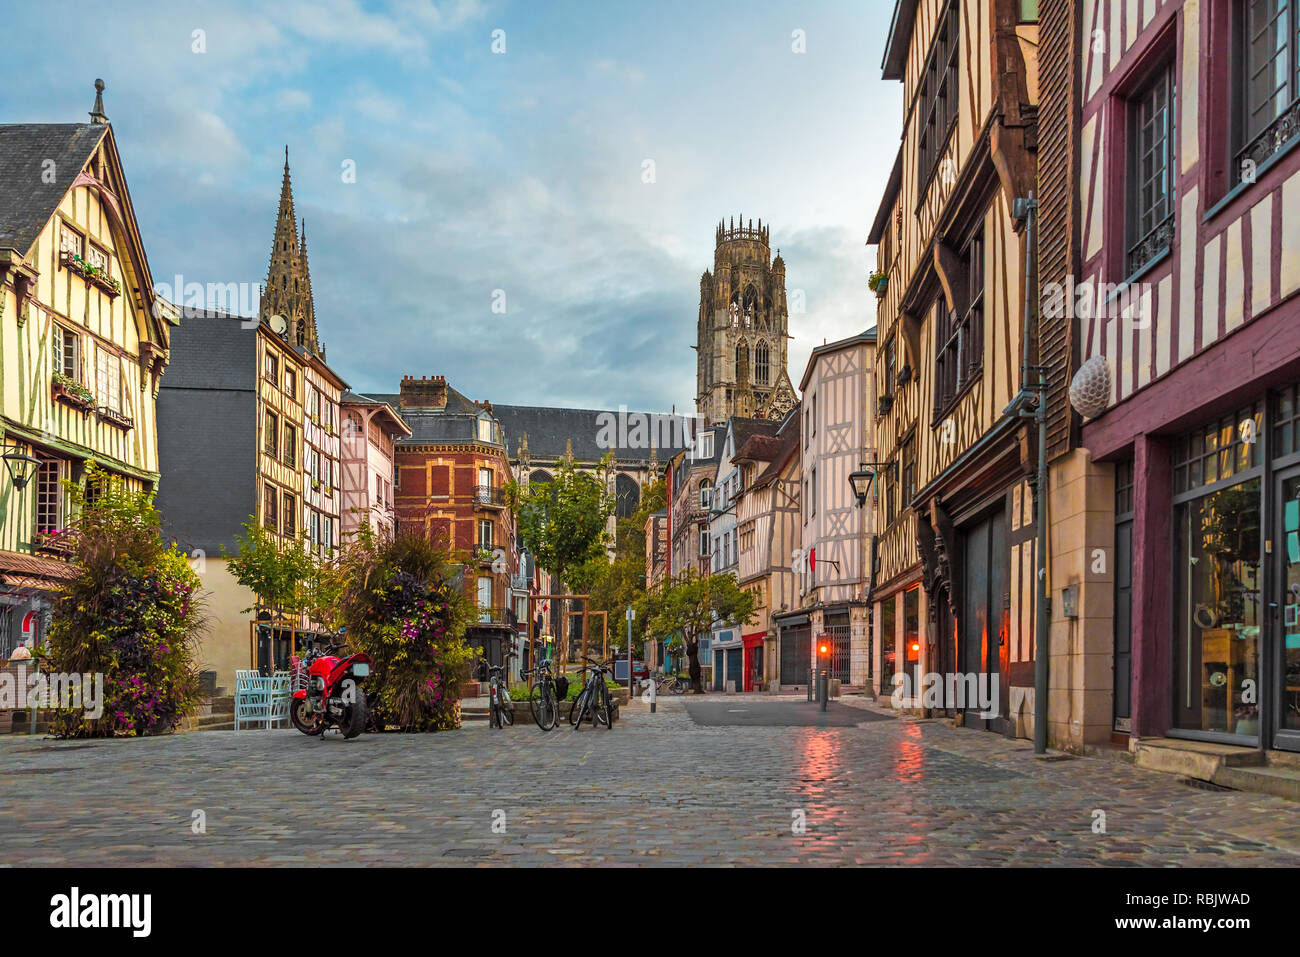 Rouen, France. Place du Lieutenant-Aubert avec famos vieux bâtiments normandie avec personne Banque D'Images